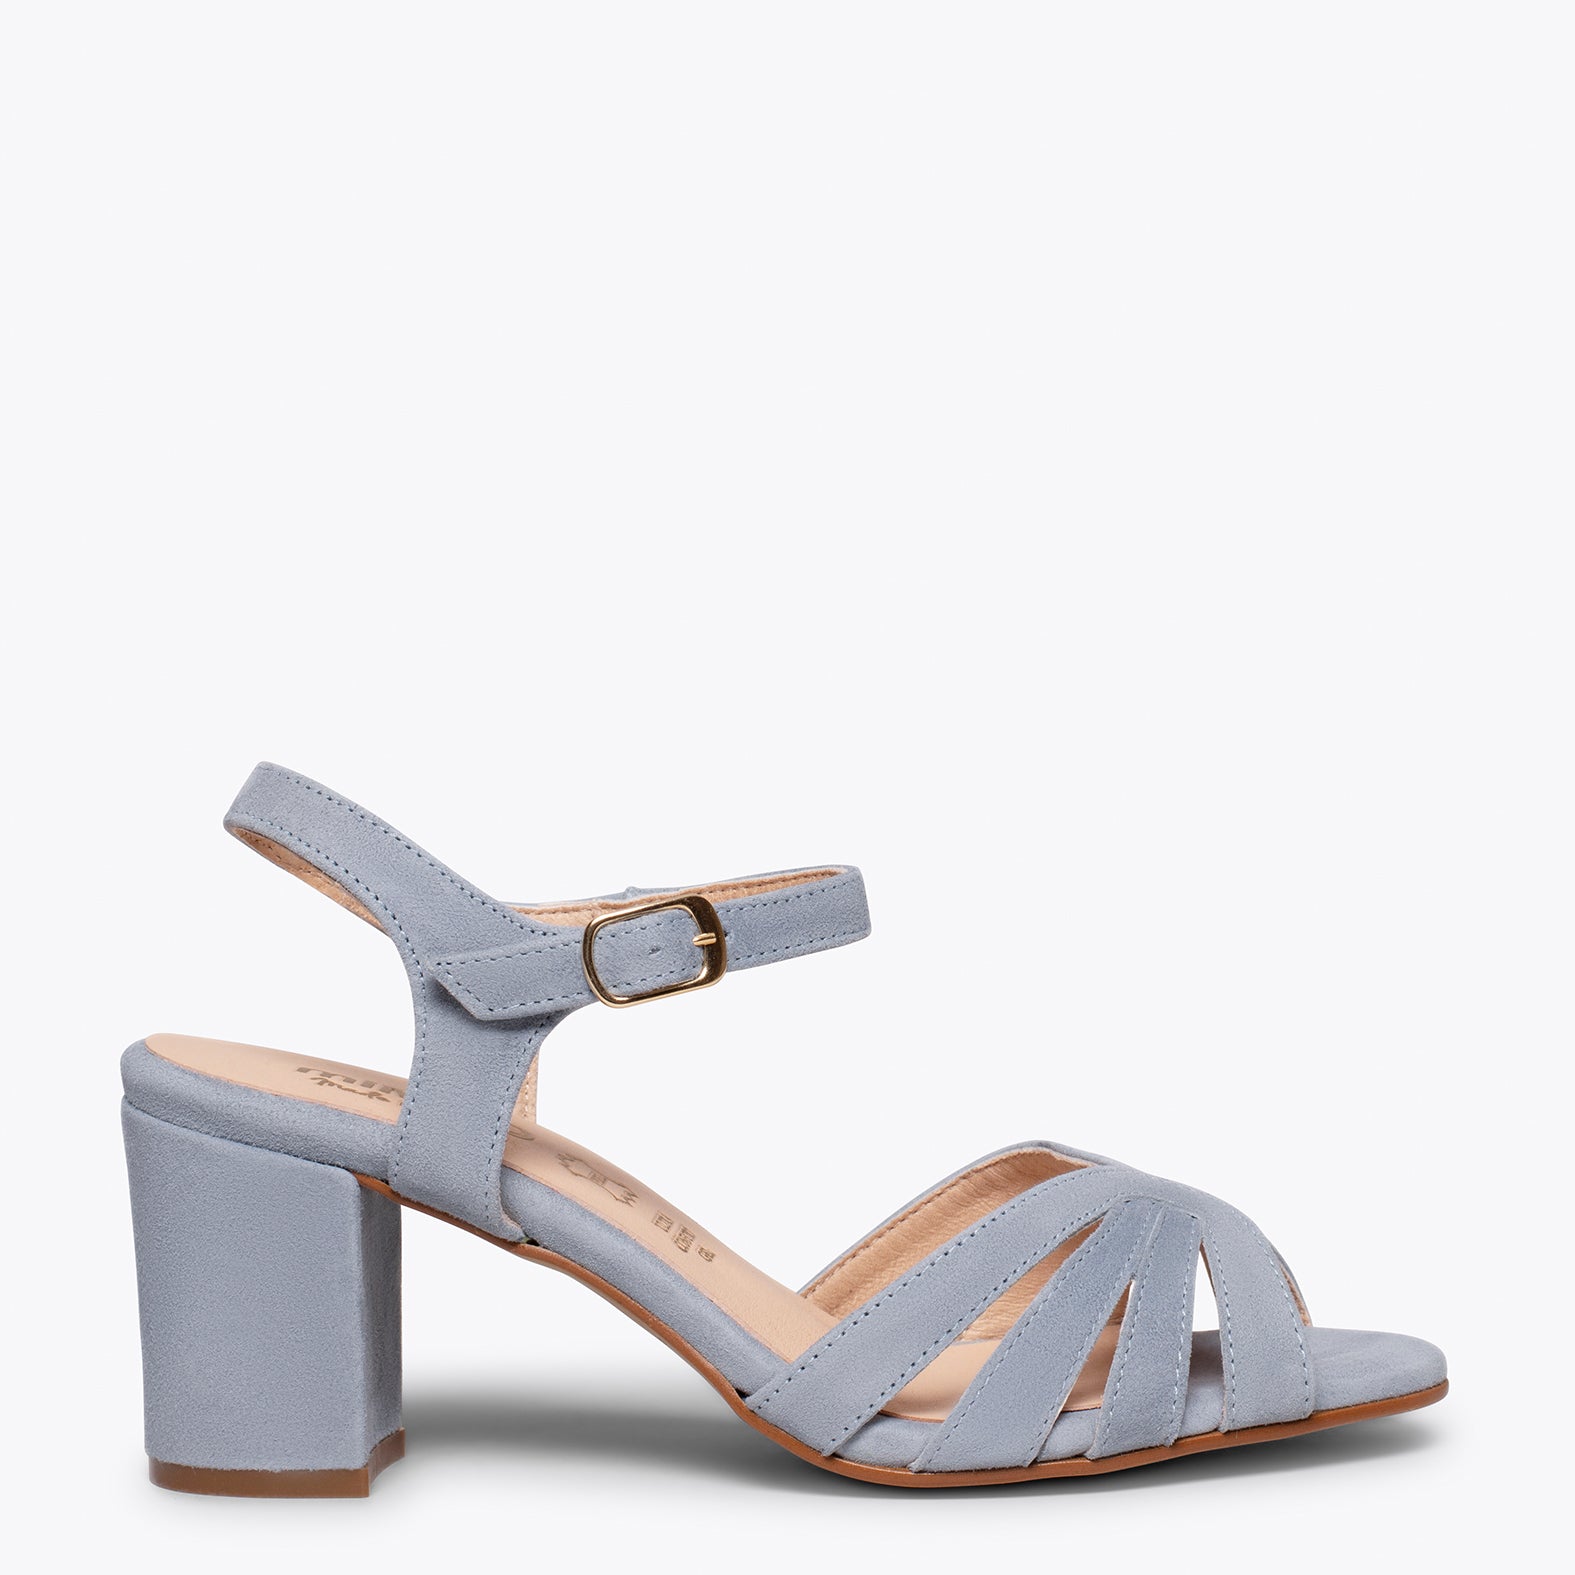 MUSE – BLUE comfortable mid heel sandal